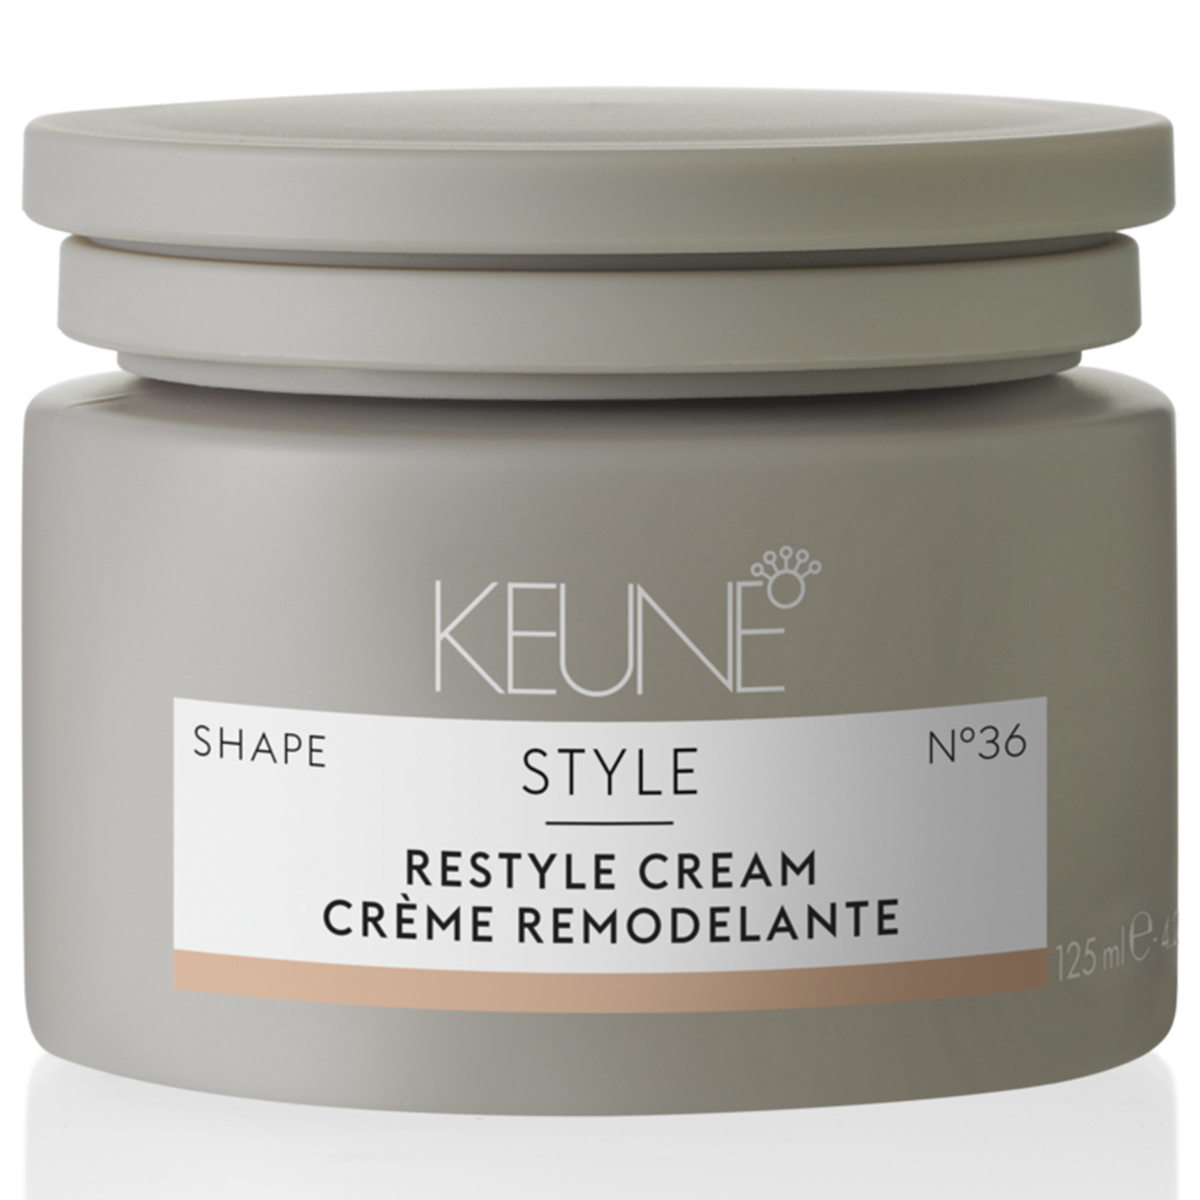 крем для рестайлинга keune style restyle cream 125 мл Keune Крем для рестайлинга Restyle Cream №36, 125 мл (Keune, Style)